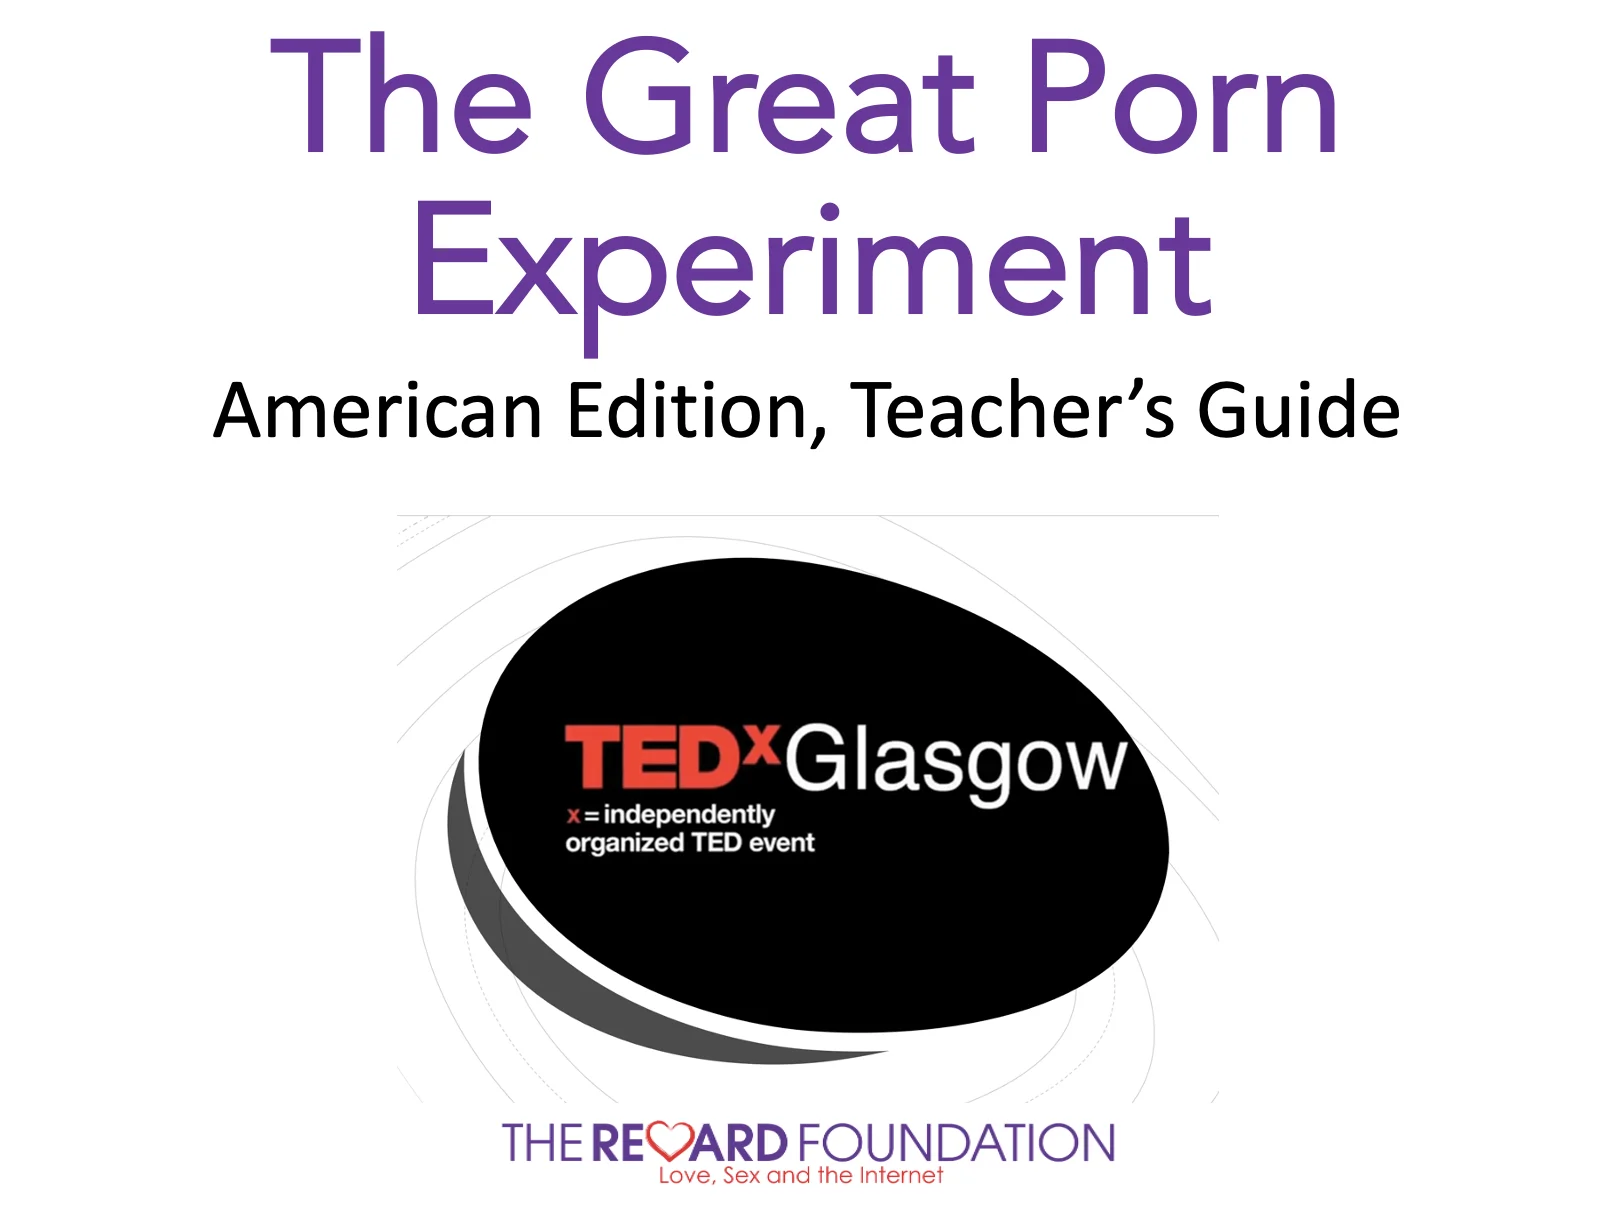 Grutte porno-eksperimint Amerikaansk